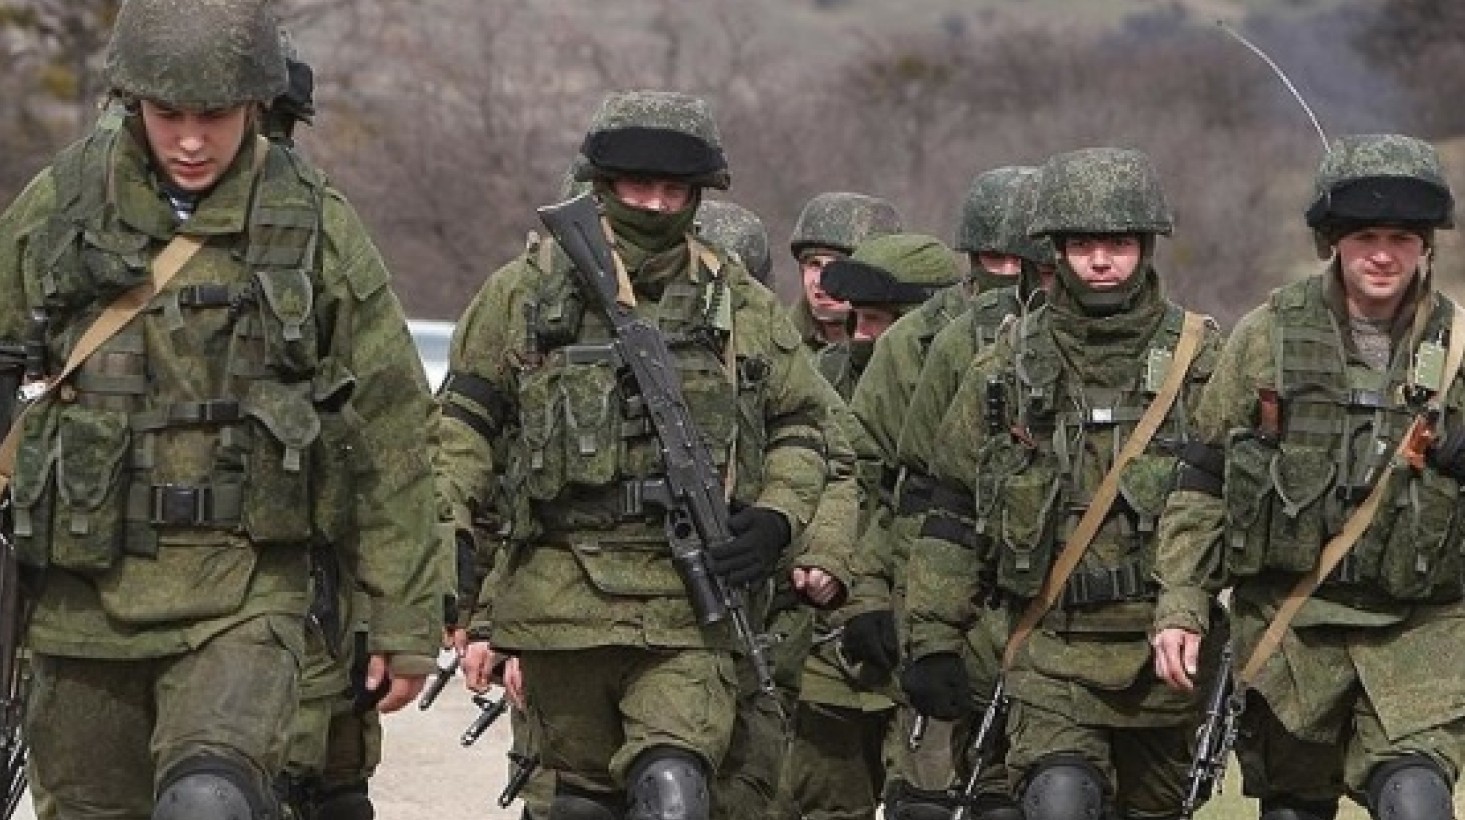 Ռուս զինվորականները տարհանում են իրենց ընտանիքներին Ղրիմից